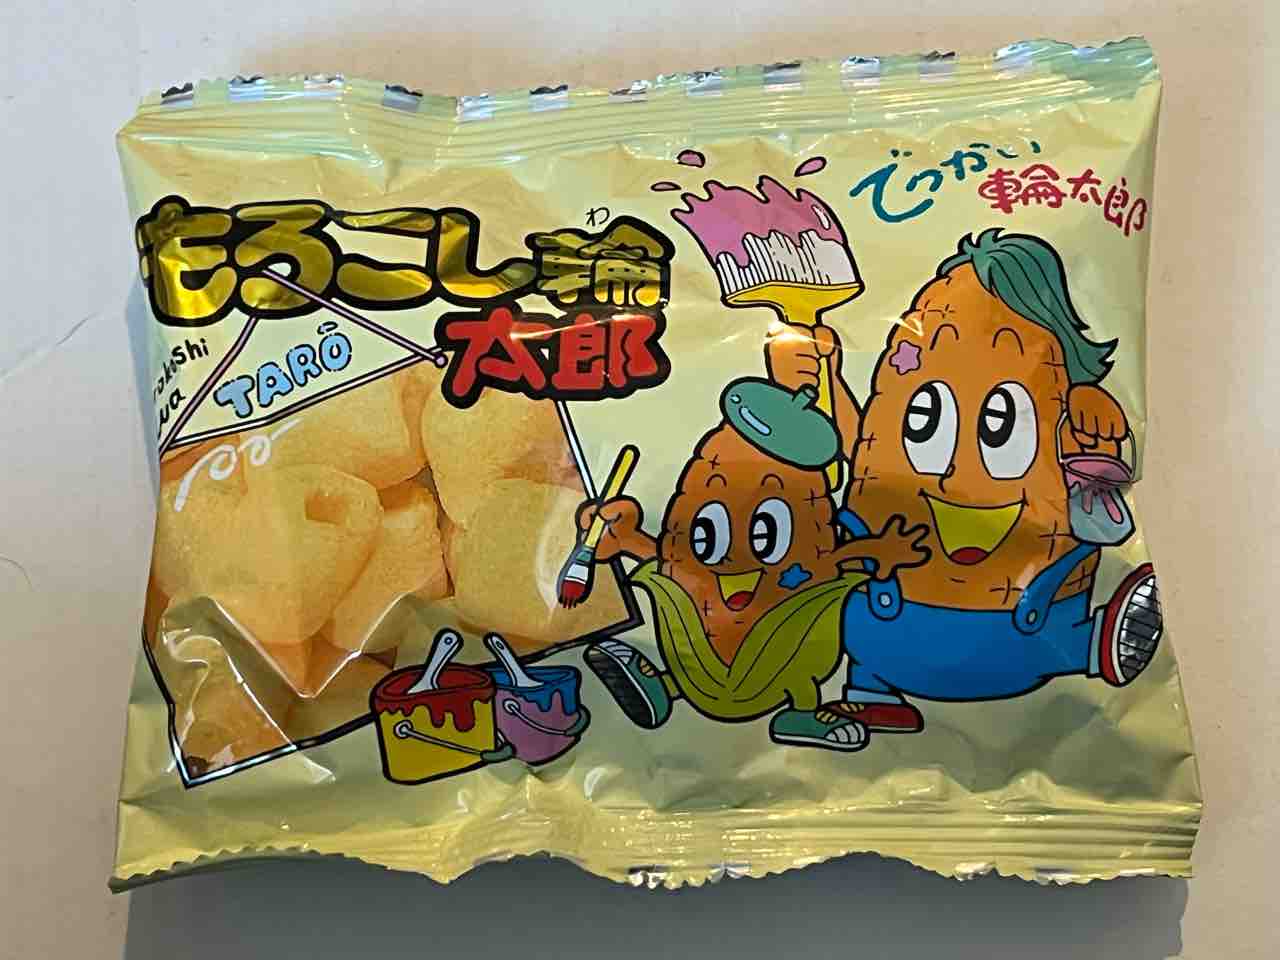 もろこし輪太郎は 生まれはアメリカ 育ちは茨城県 株 菓道 です タベシラ 食べて調べて書く雑学ブログ